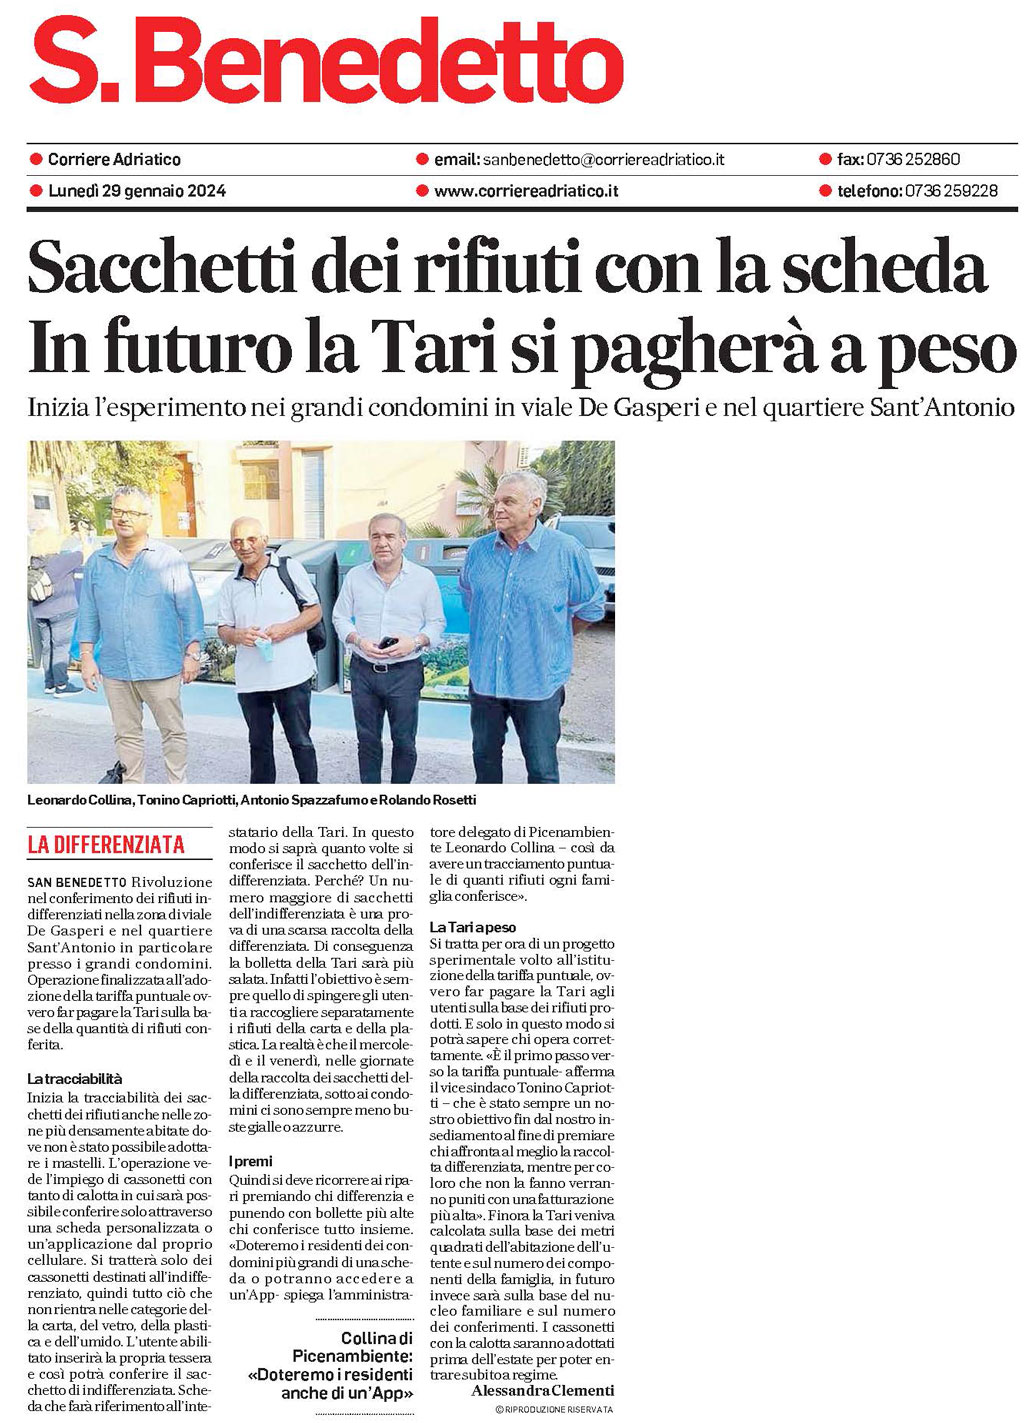 Rassegna Stampa Corriere Adriatico 29.01.2024